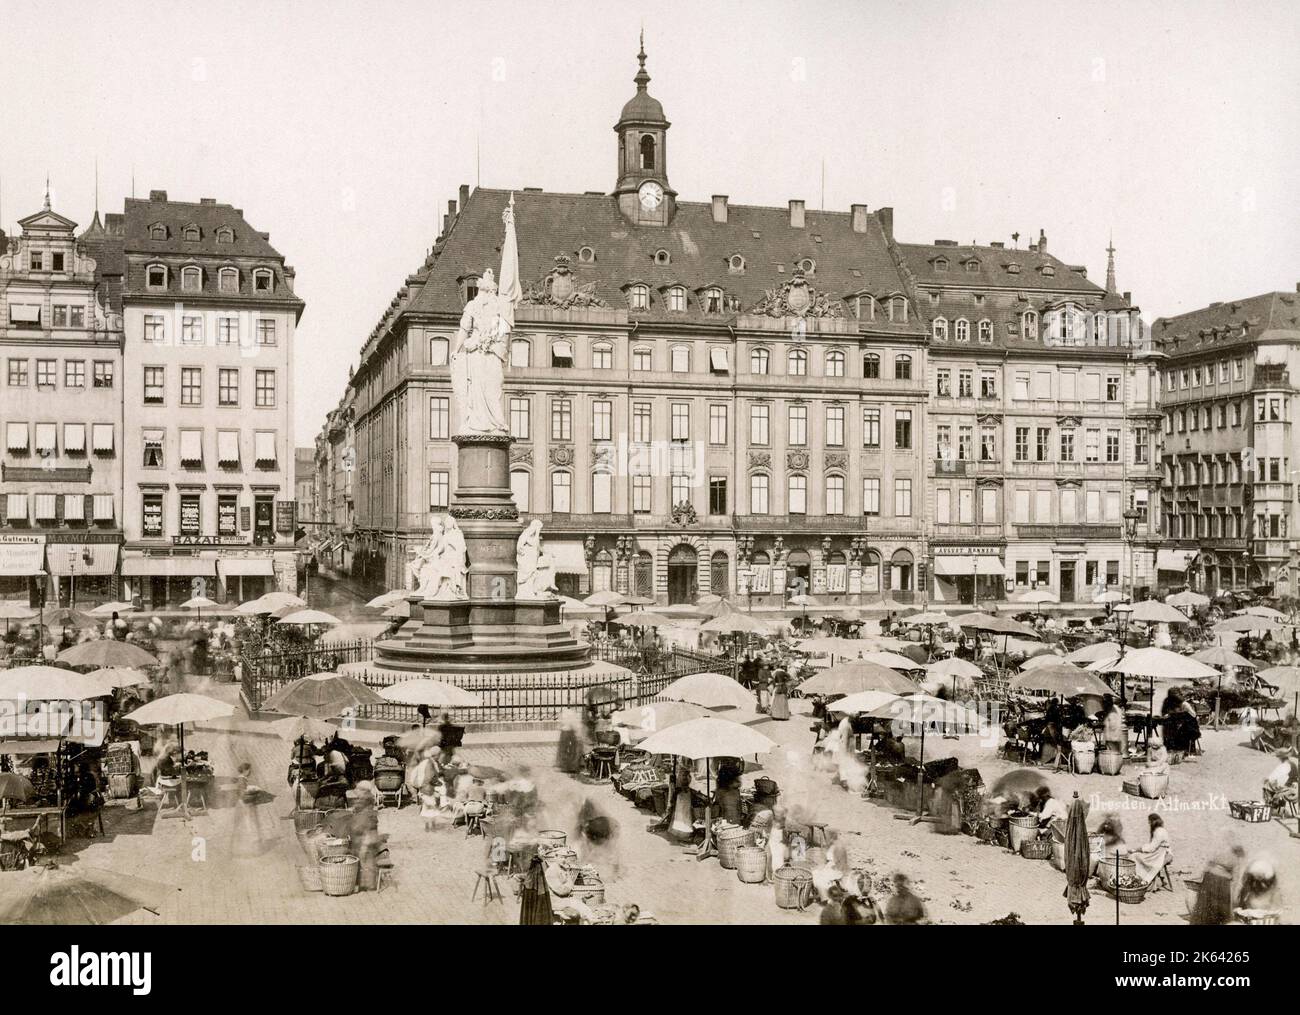 Altmarkt Dresden, Germania con mercato in corso. Vintage 19th ° secolo fotografia Foto Stock